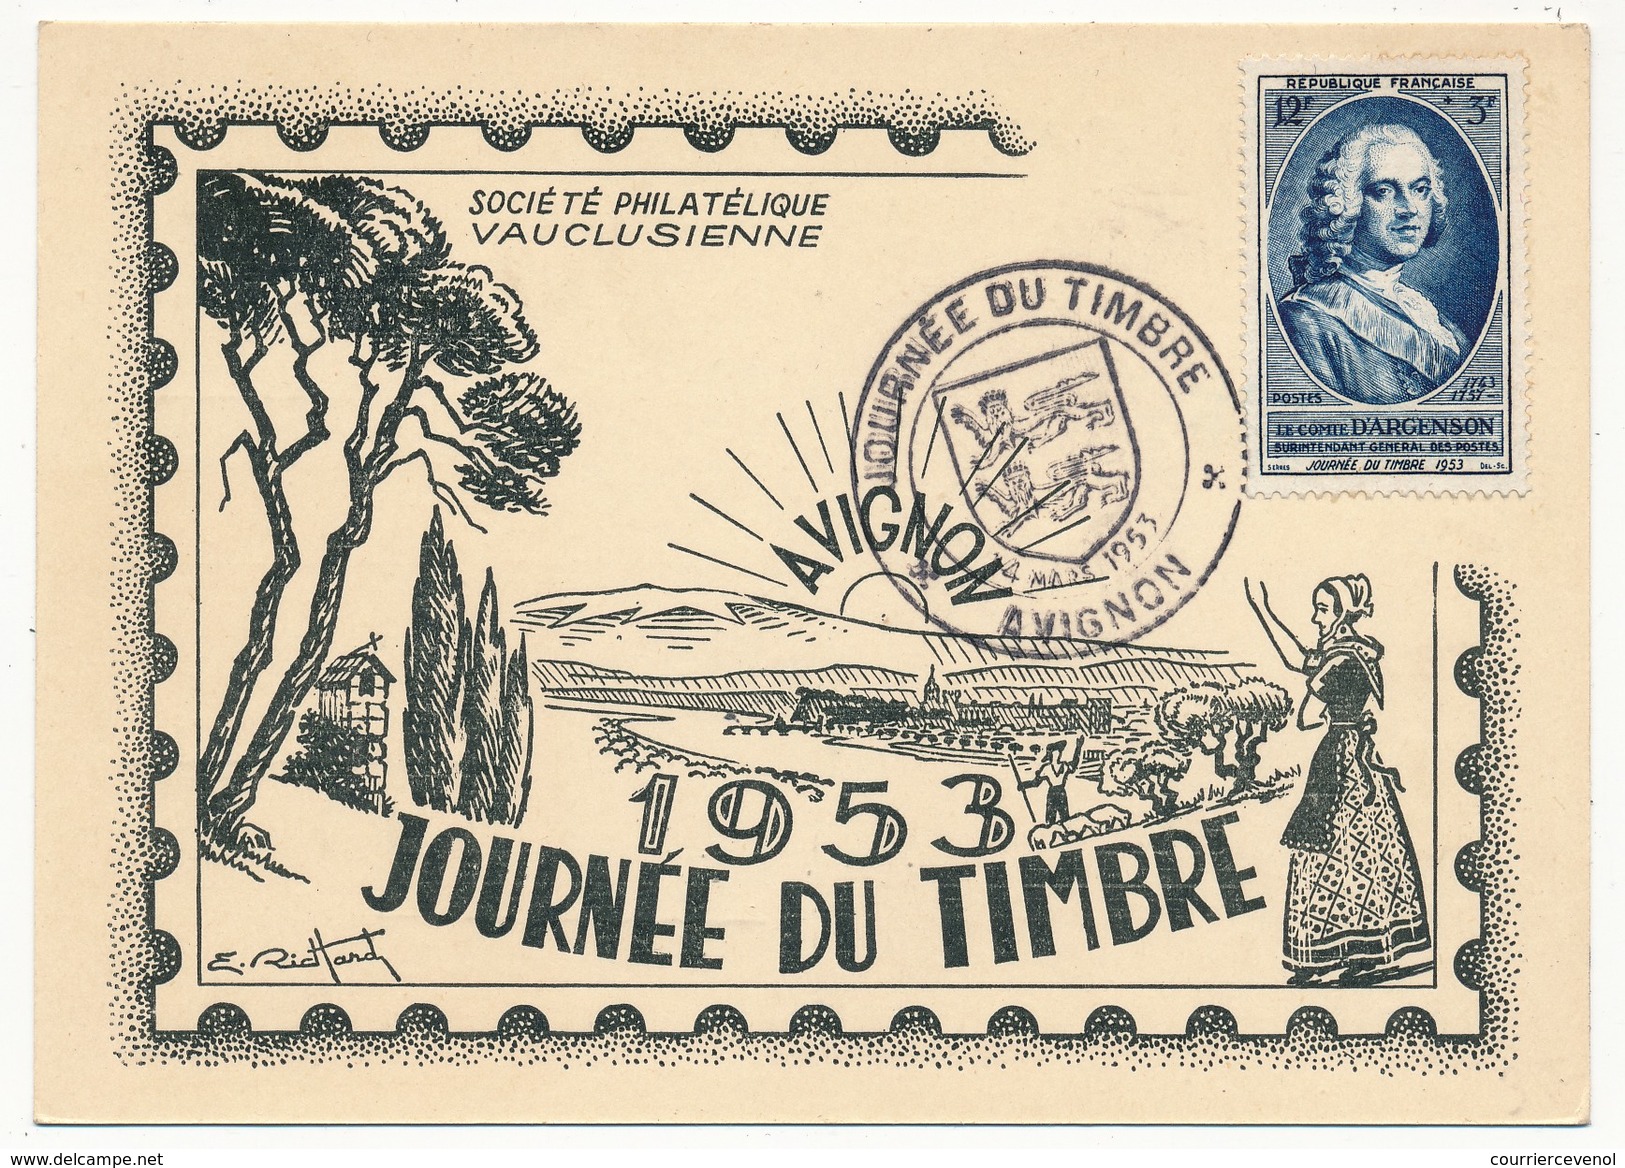 FRANCE - Carte Locale Journée Du Timbre 1953 - AVIGNON - Timbre D'Argenson - Stamp's Day